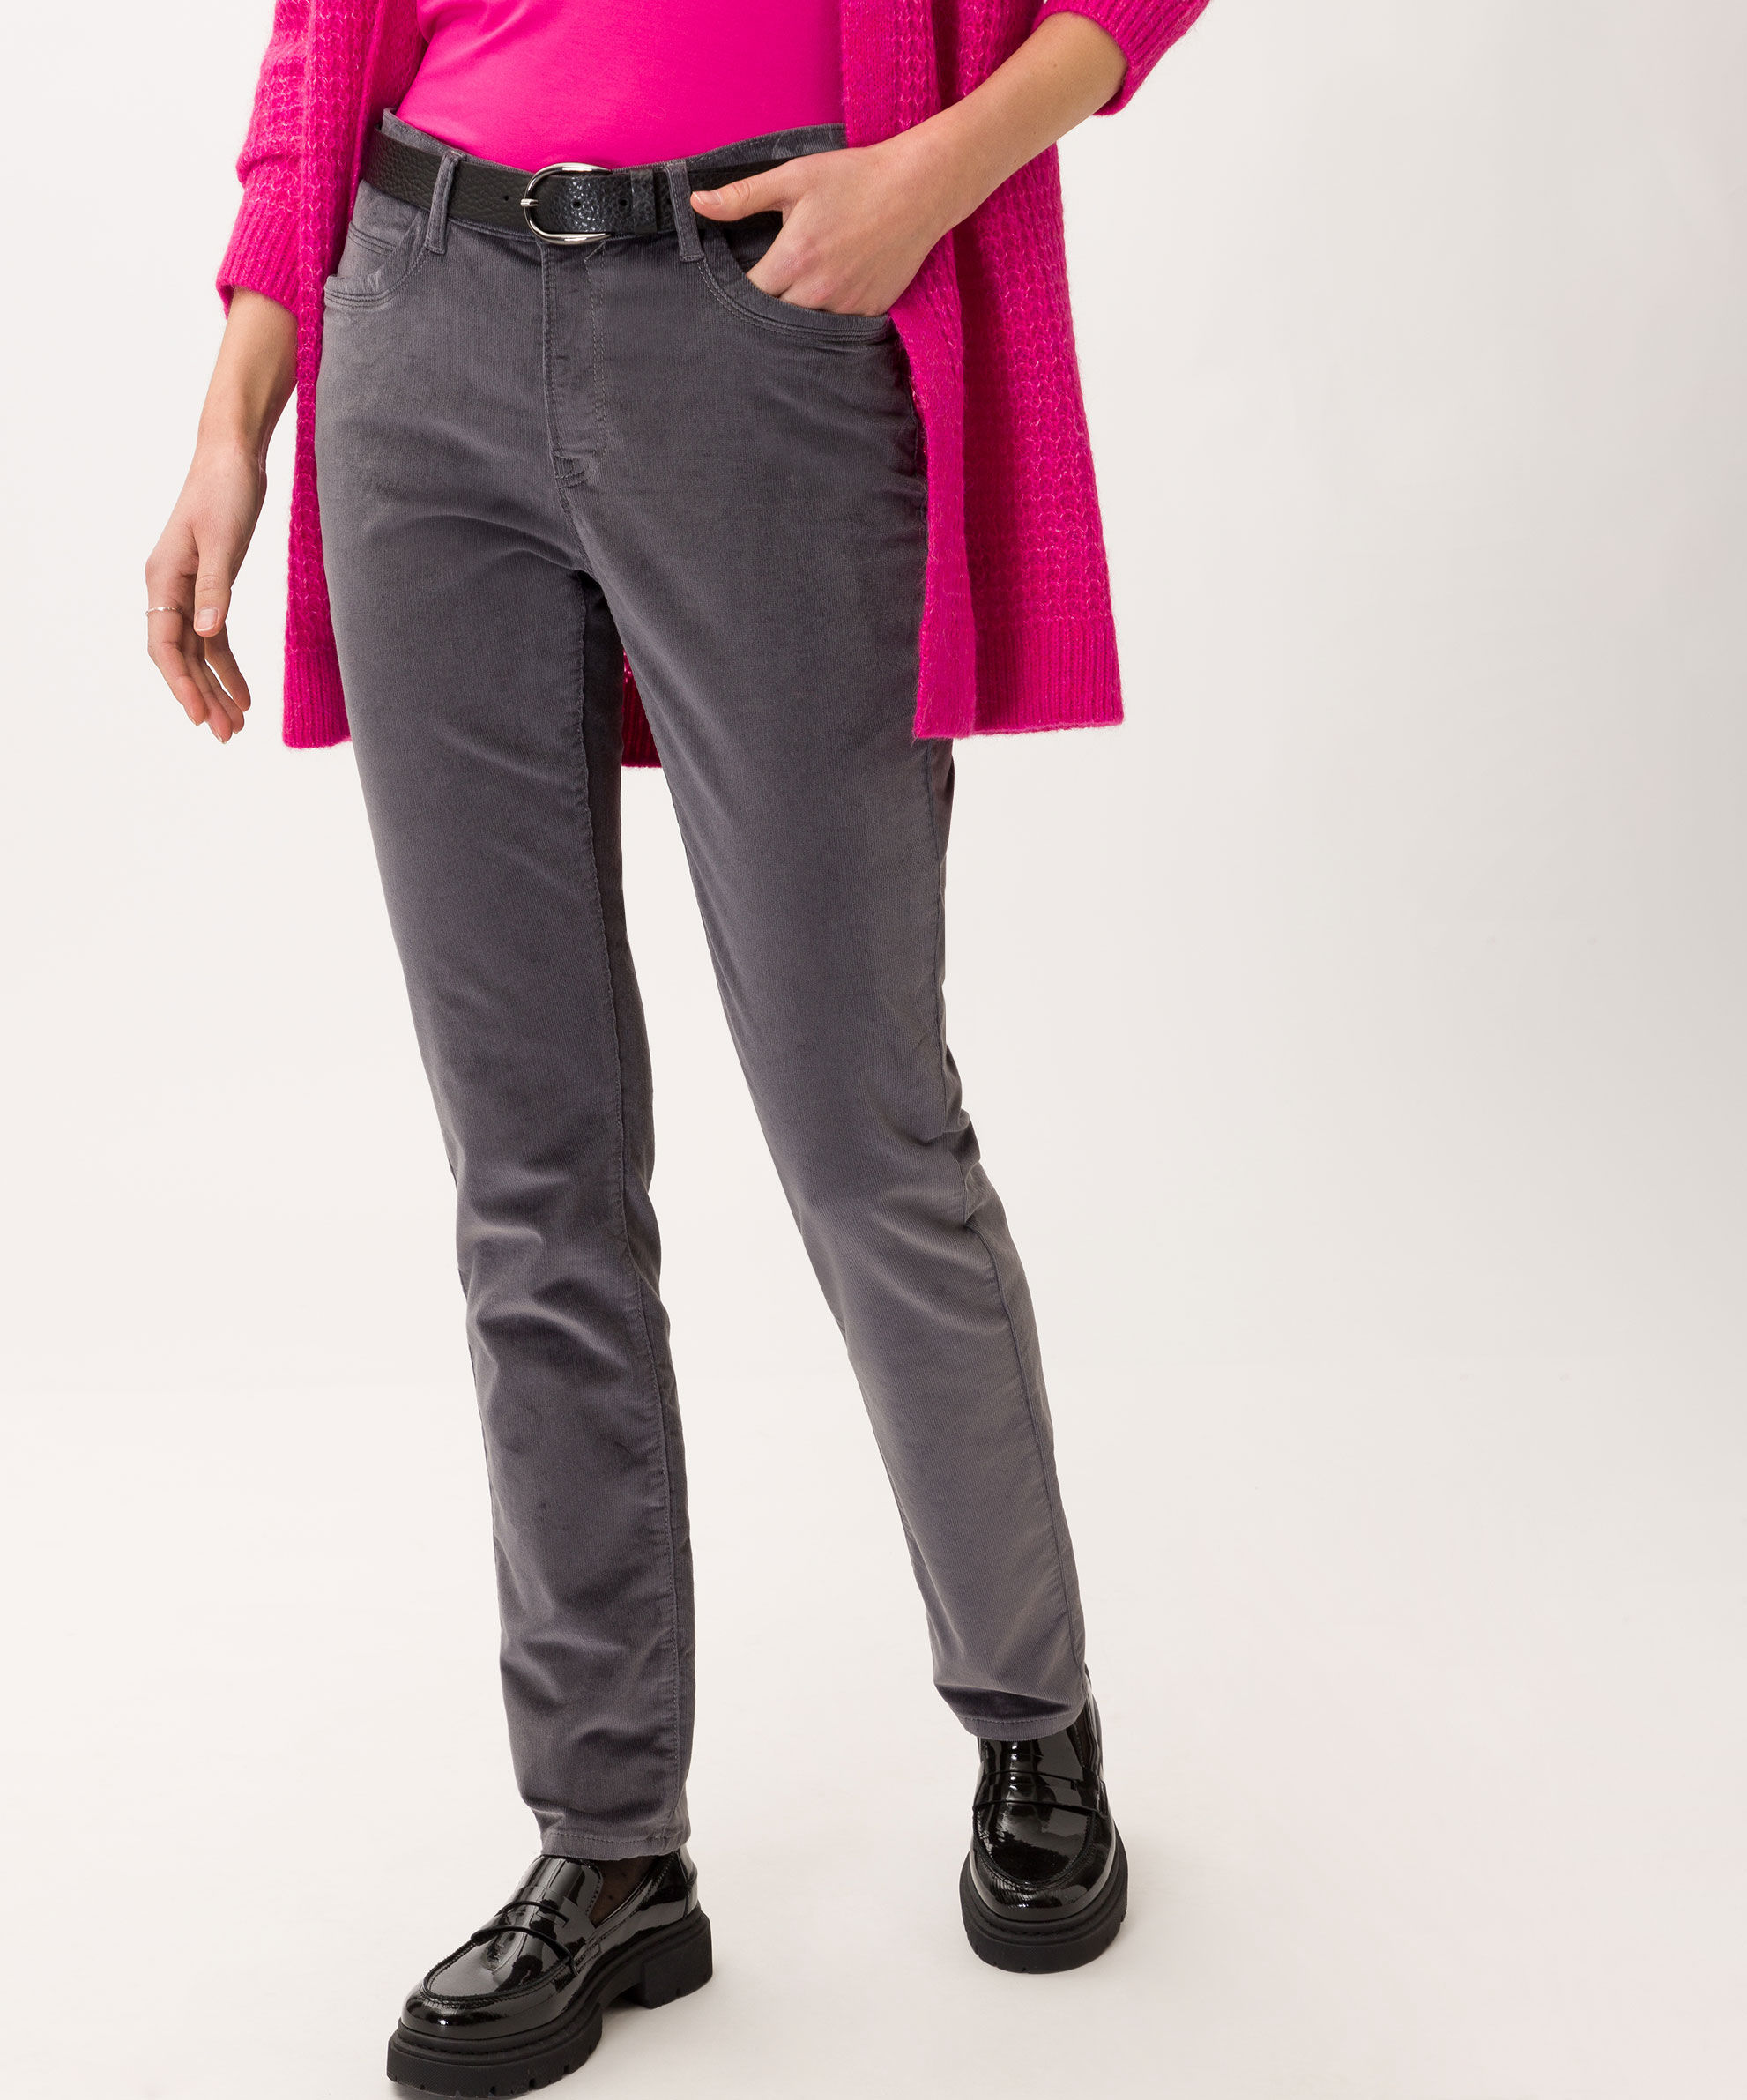 women Shop Hartmann BRAX feiner Cordqualität Mode in Fit - Slim Five-Pocket-Hose Style Mary